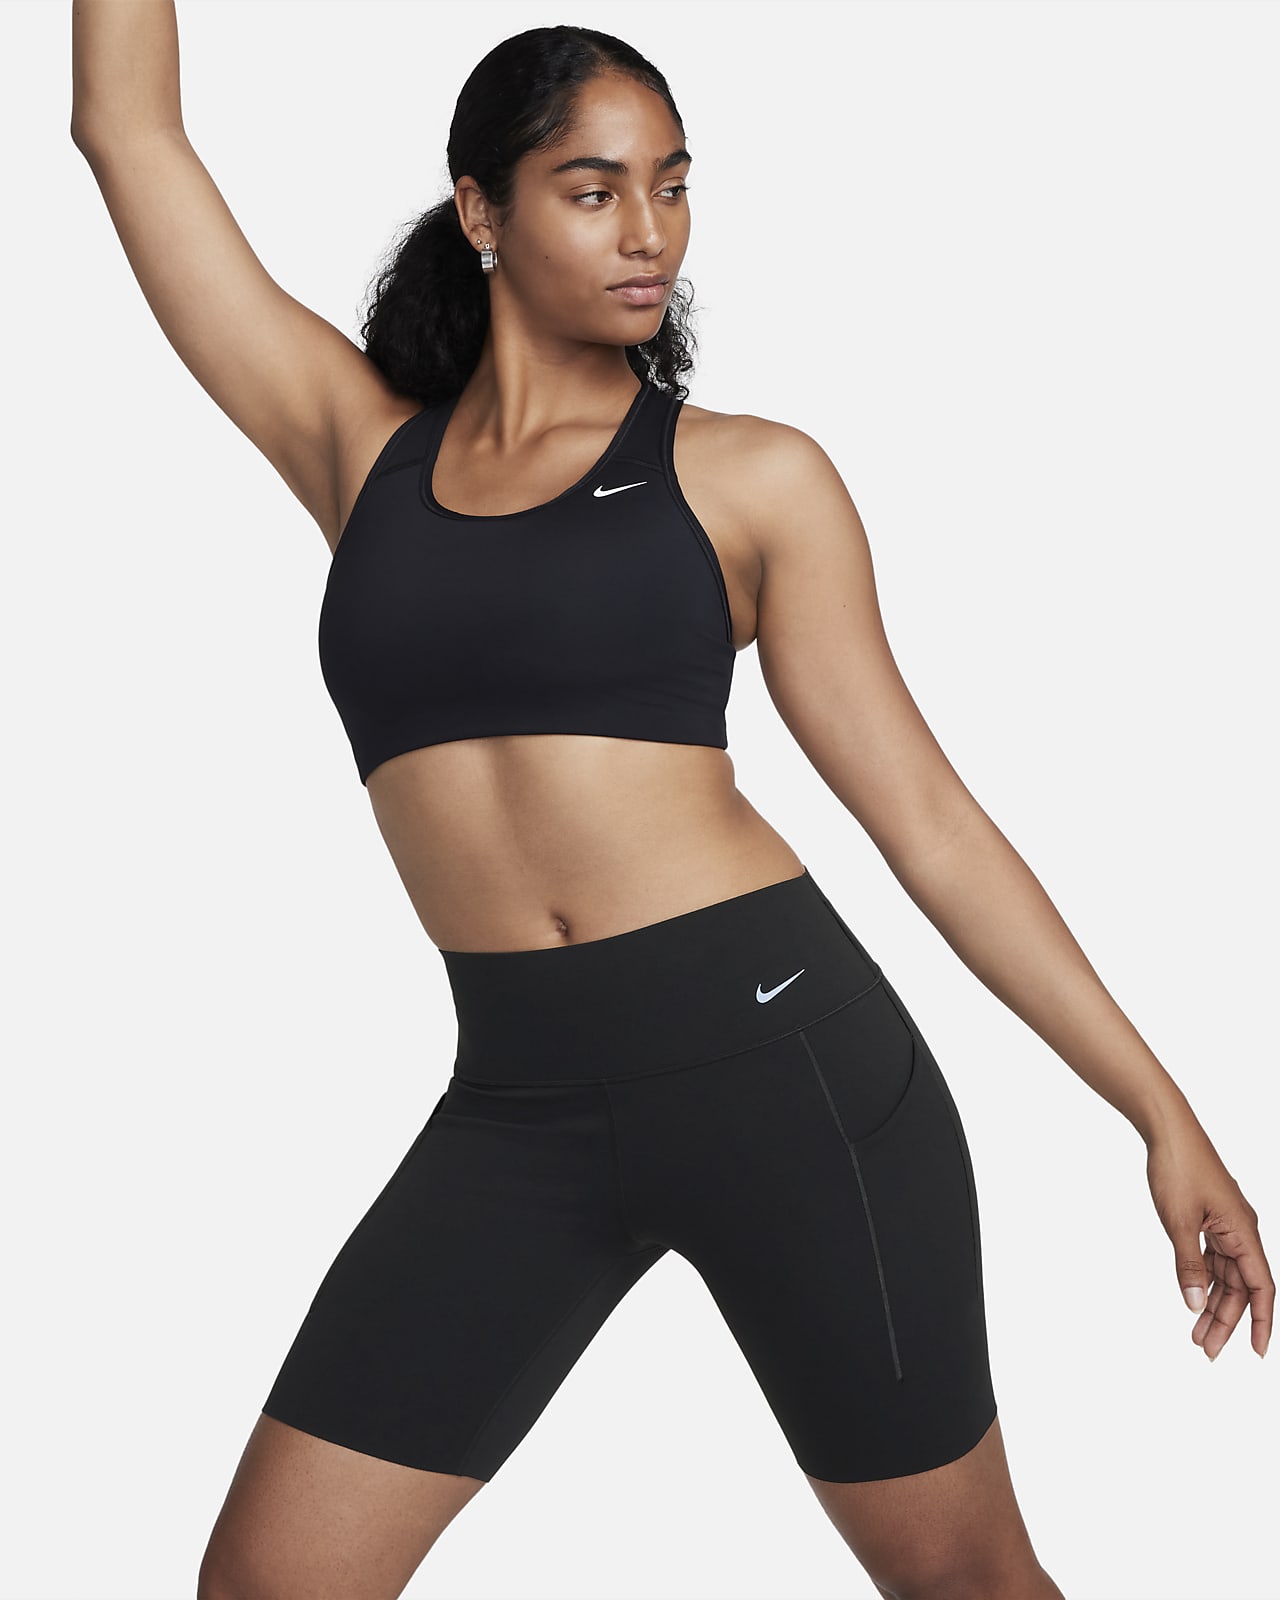 Teasing er der omvendt Nike Universa-cykelshorts med medium støtte, mellemhøj talje og lommer til  kvinder. Nike DK